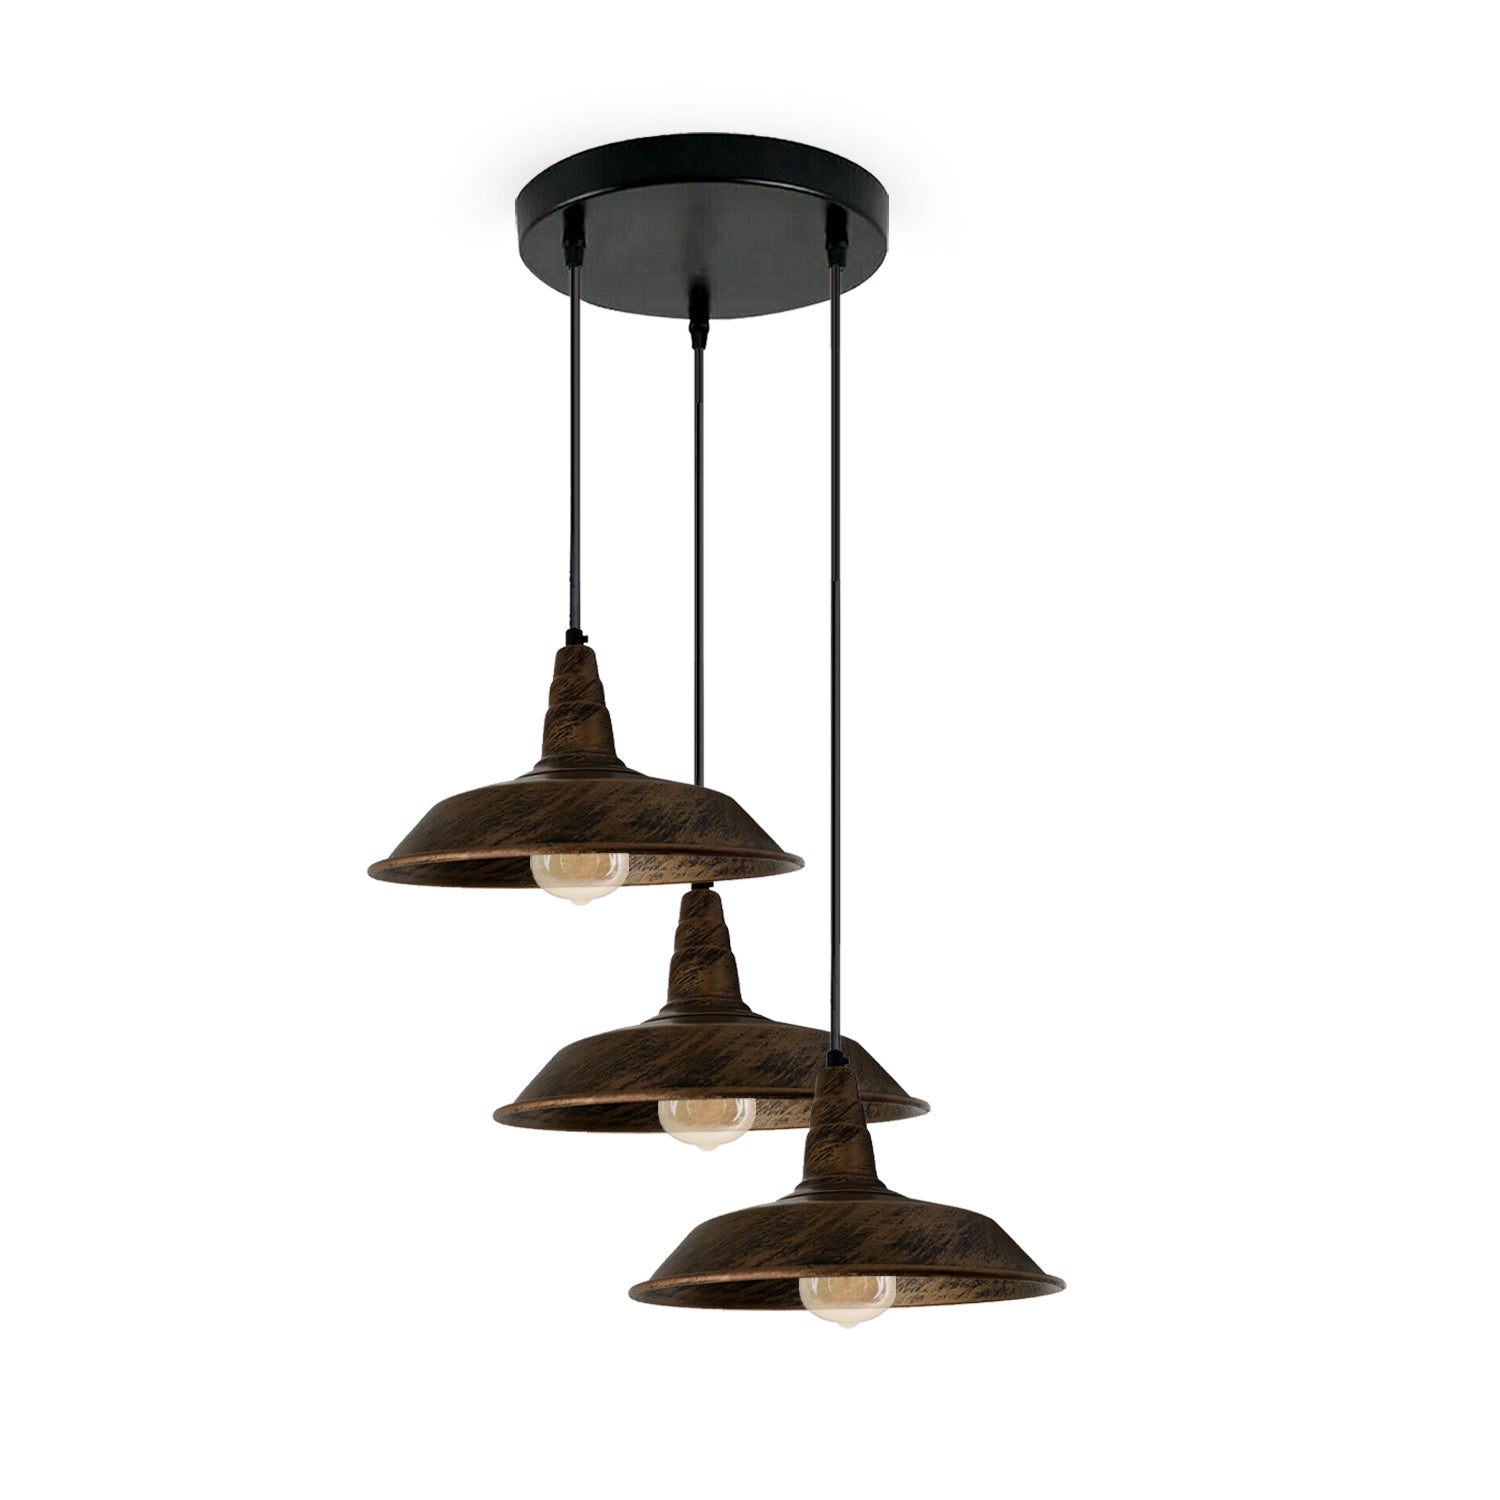 Industrial Vintage 3 head Lights Pendant Round Ceiling Light 26cm Bowl Shade Brushed Copper~3743 - LEDSone UK Ltd